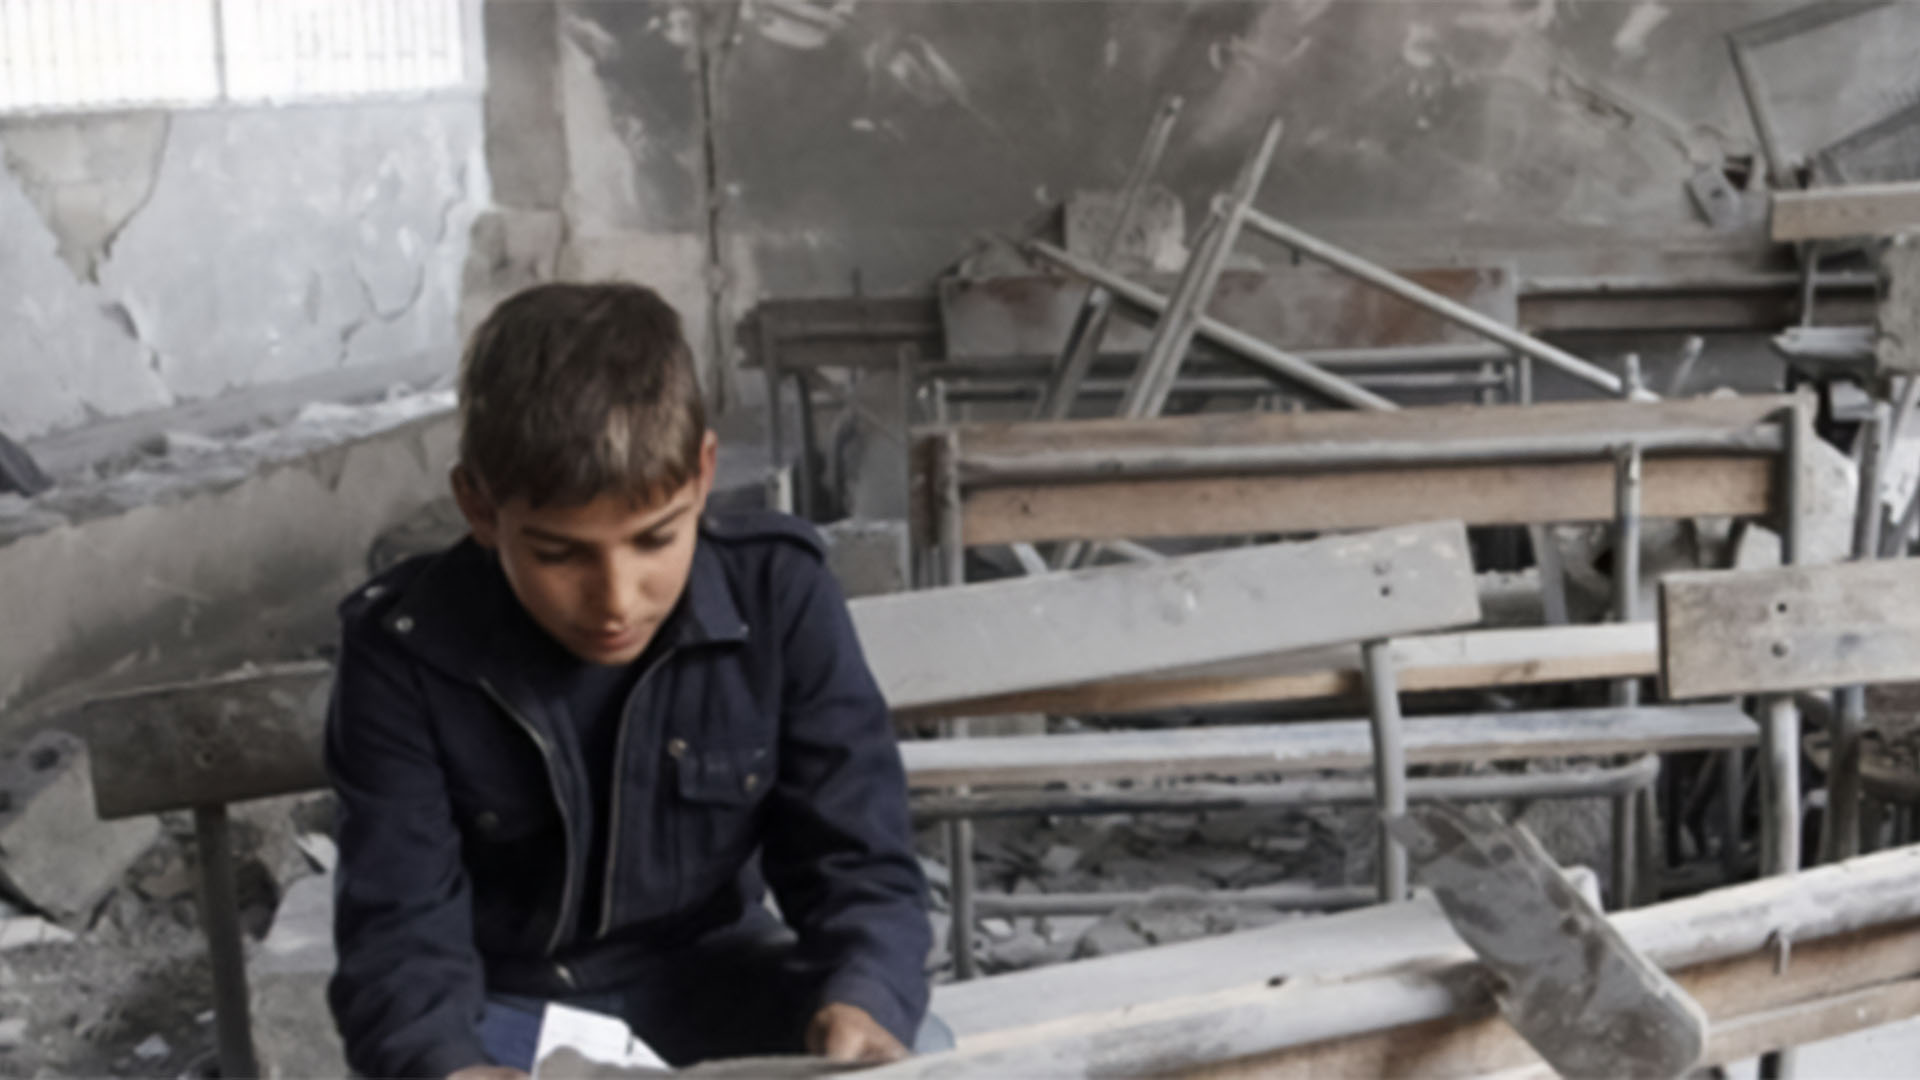 (العربية) واقع التعليم في سوريا يشتد خطراً